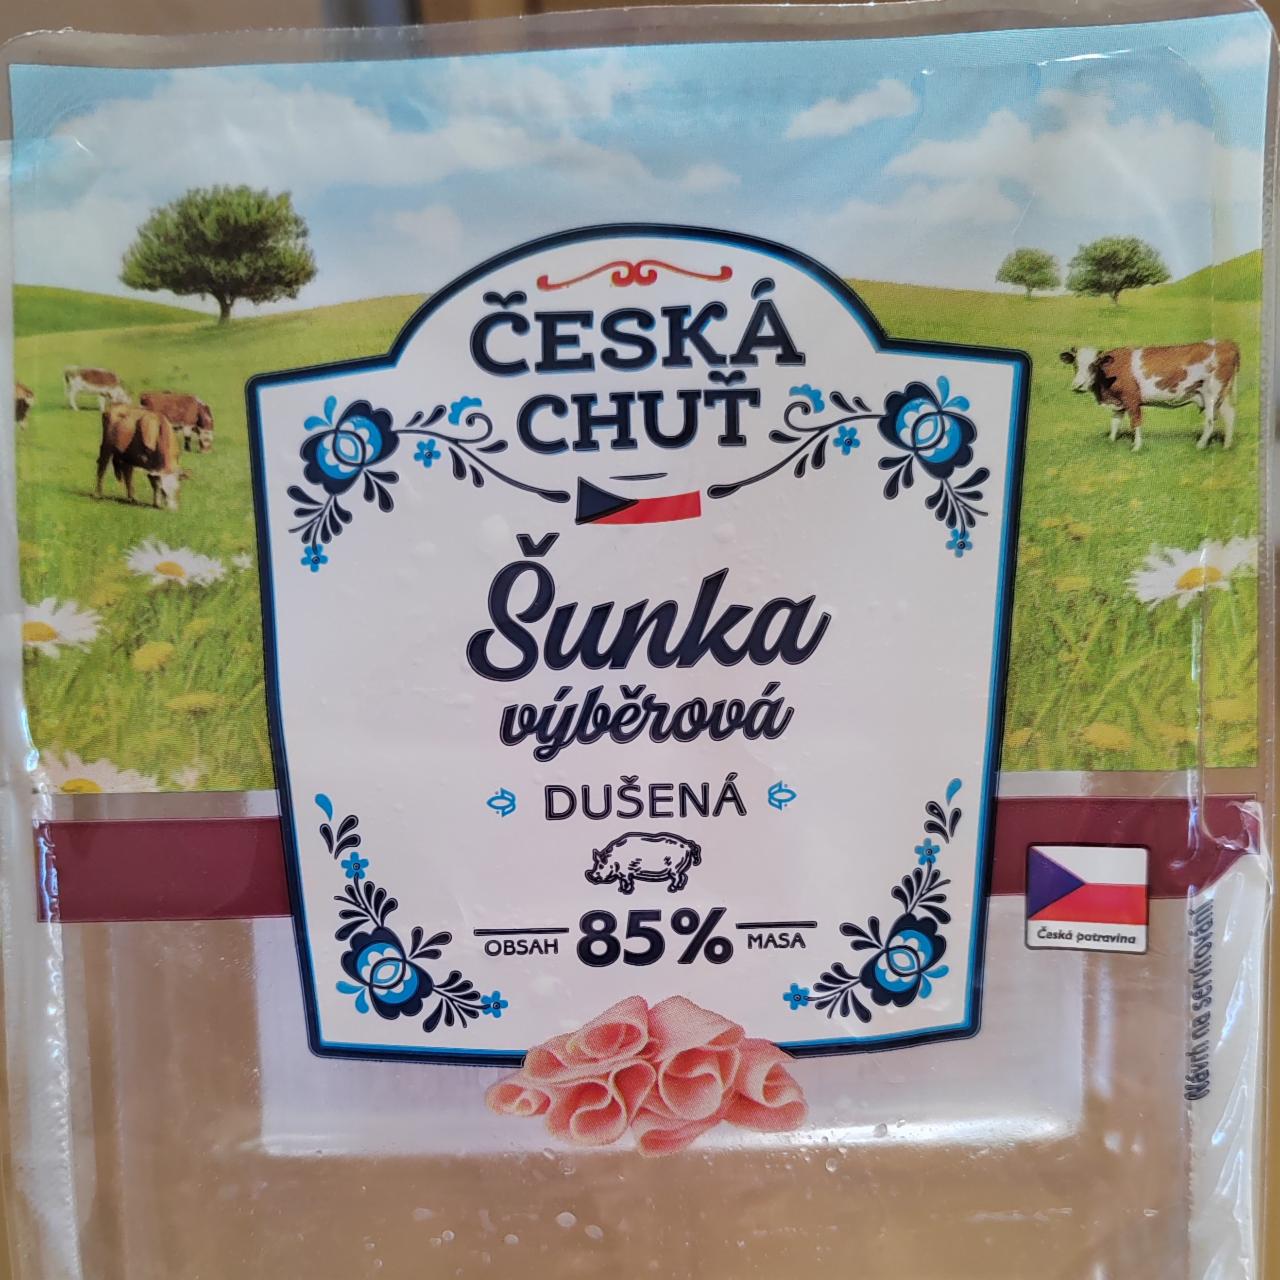 Fotografie - Šunka výběrová dušená 85% Česká chuť